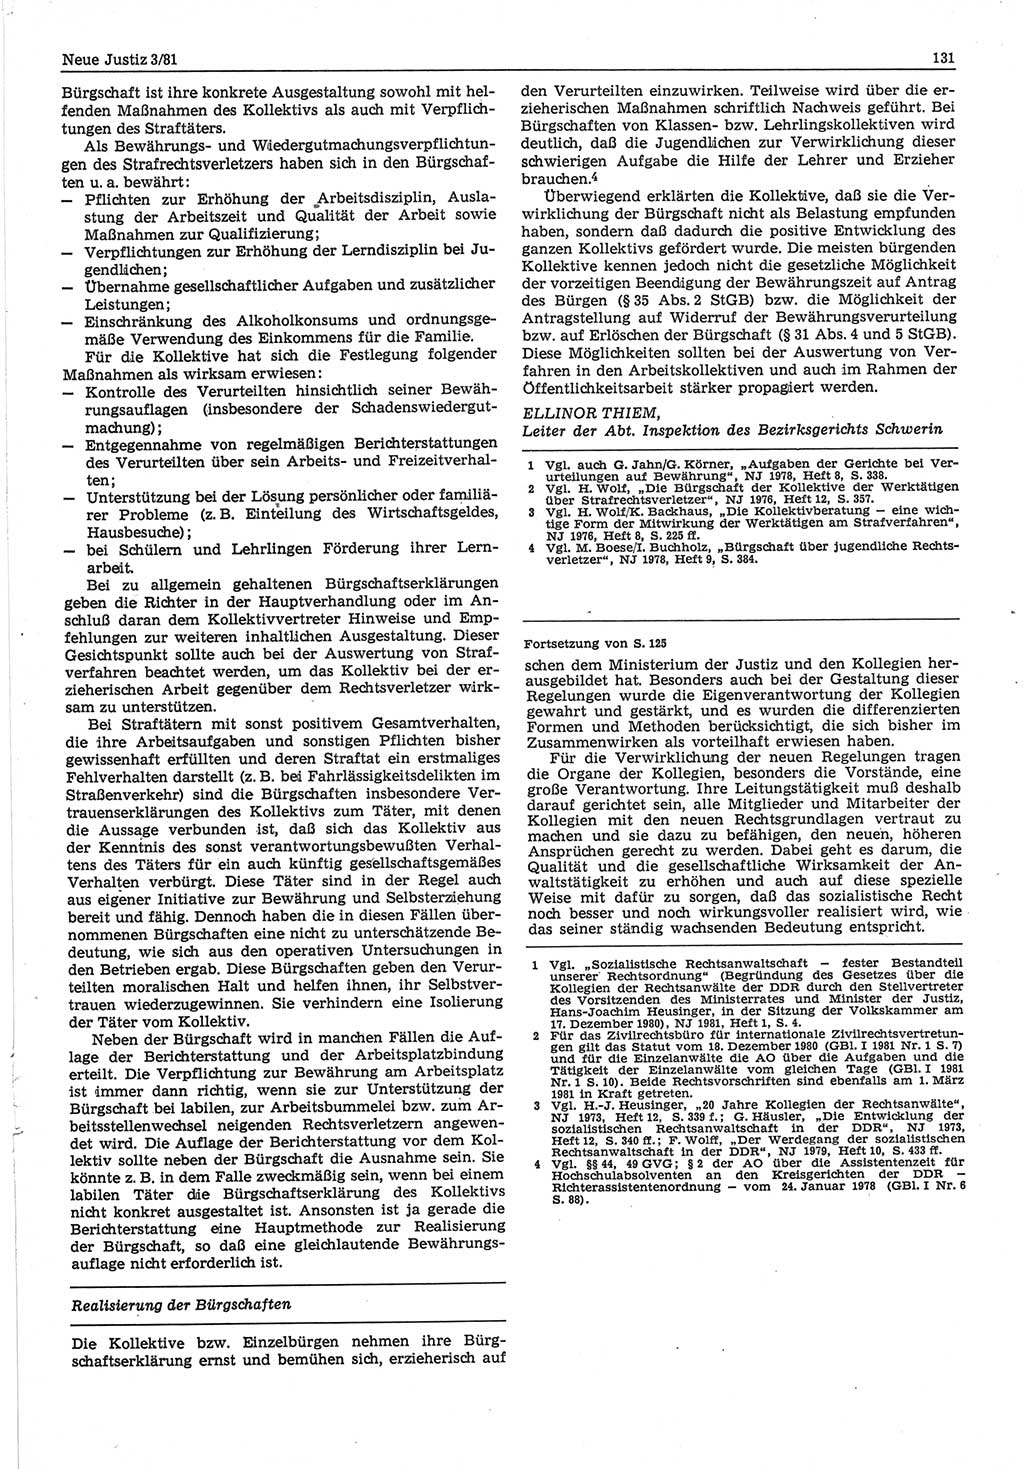 Neue Justiz (NJ), Zeitschrift für sozialistisches Recht und Gesetzlichkeit [Deutsche Demokratische Republik (DDR)], 35. Jahrgang 1981, Seite 131 (NJ DDR 1981, S. 131)